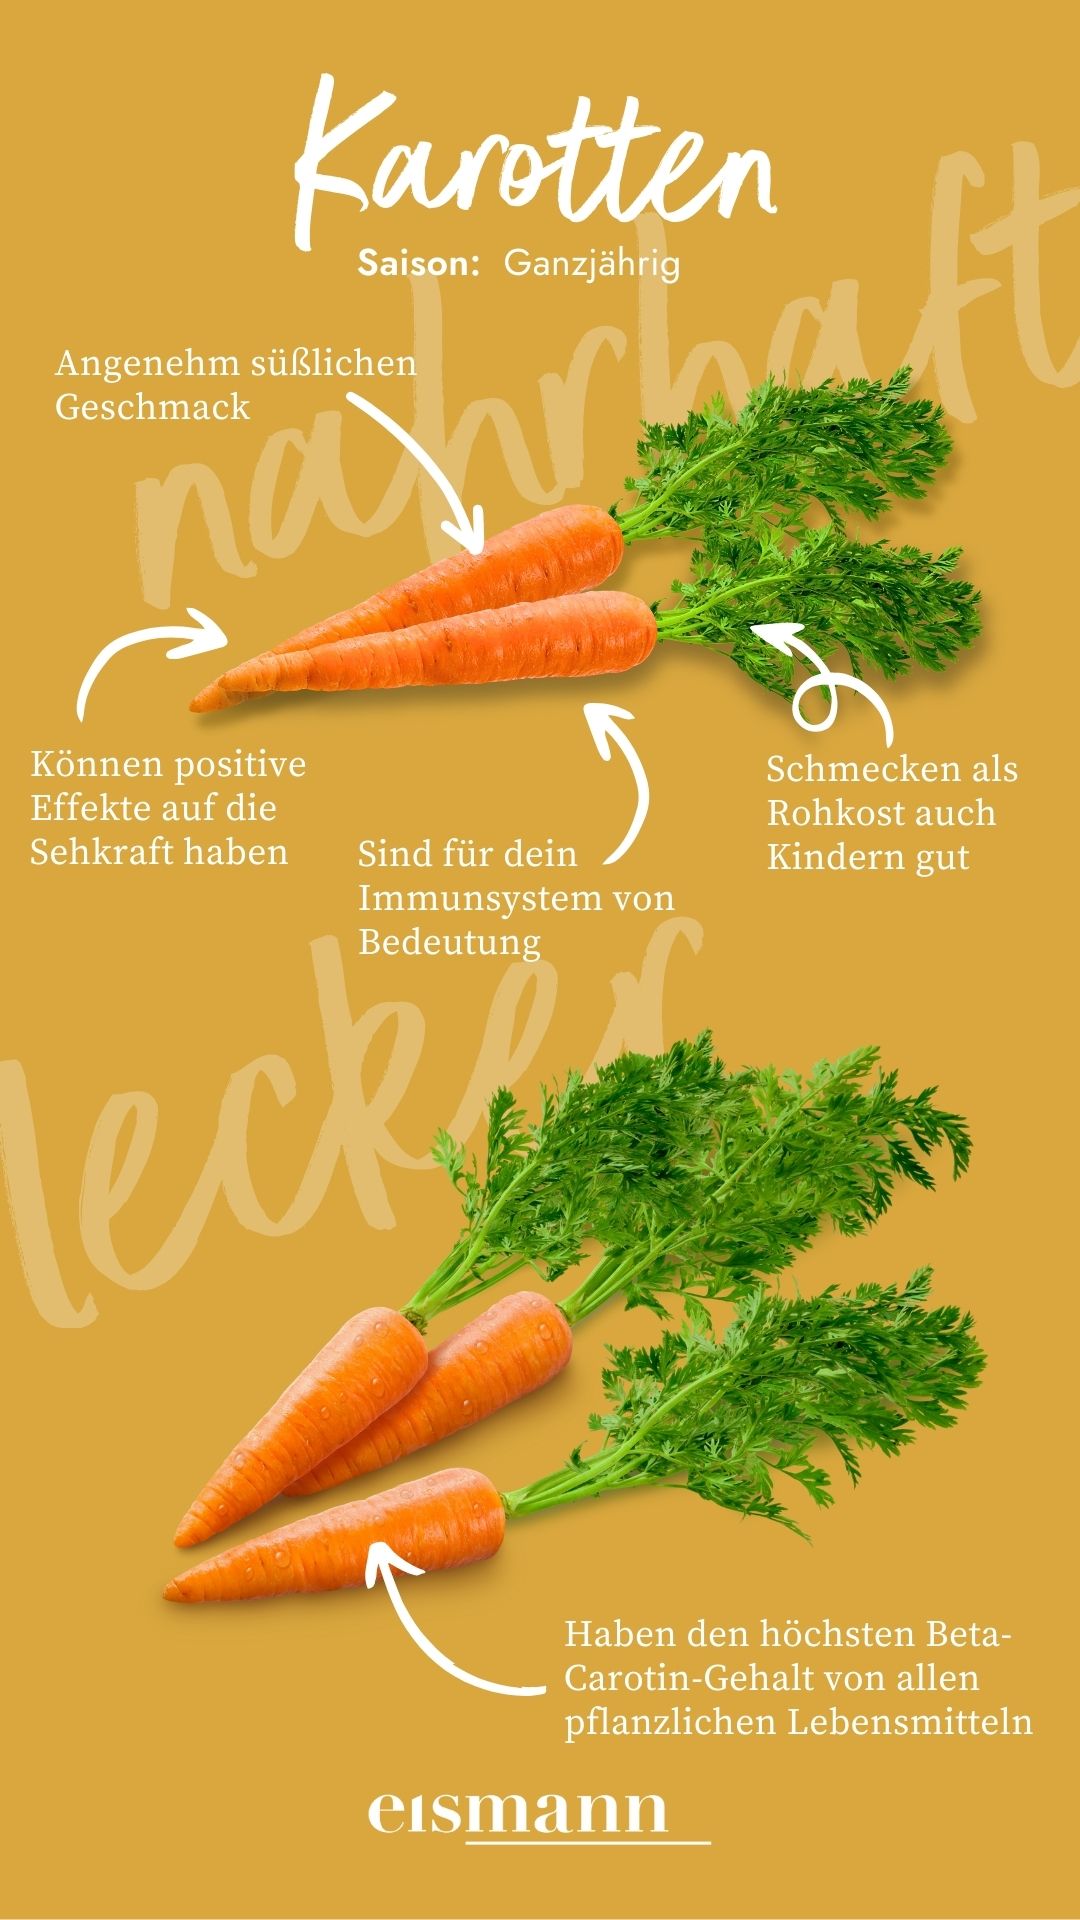 Karotten - Eigenschaften, Saison und Vorteile in der Ernährung